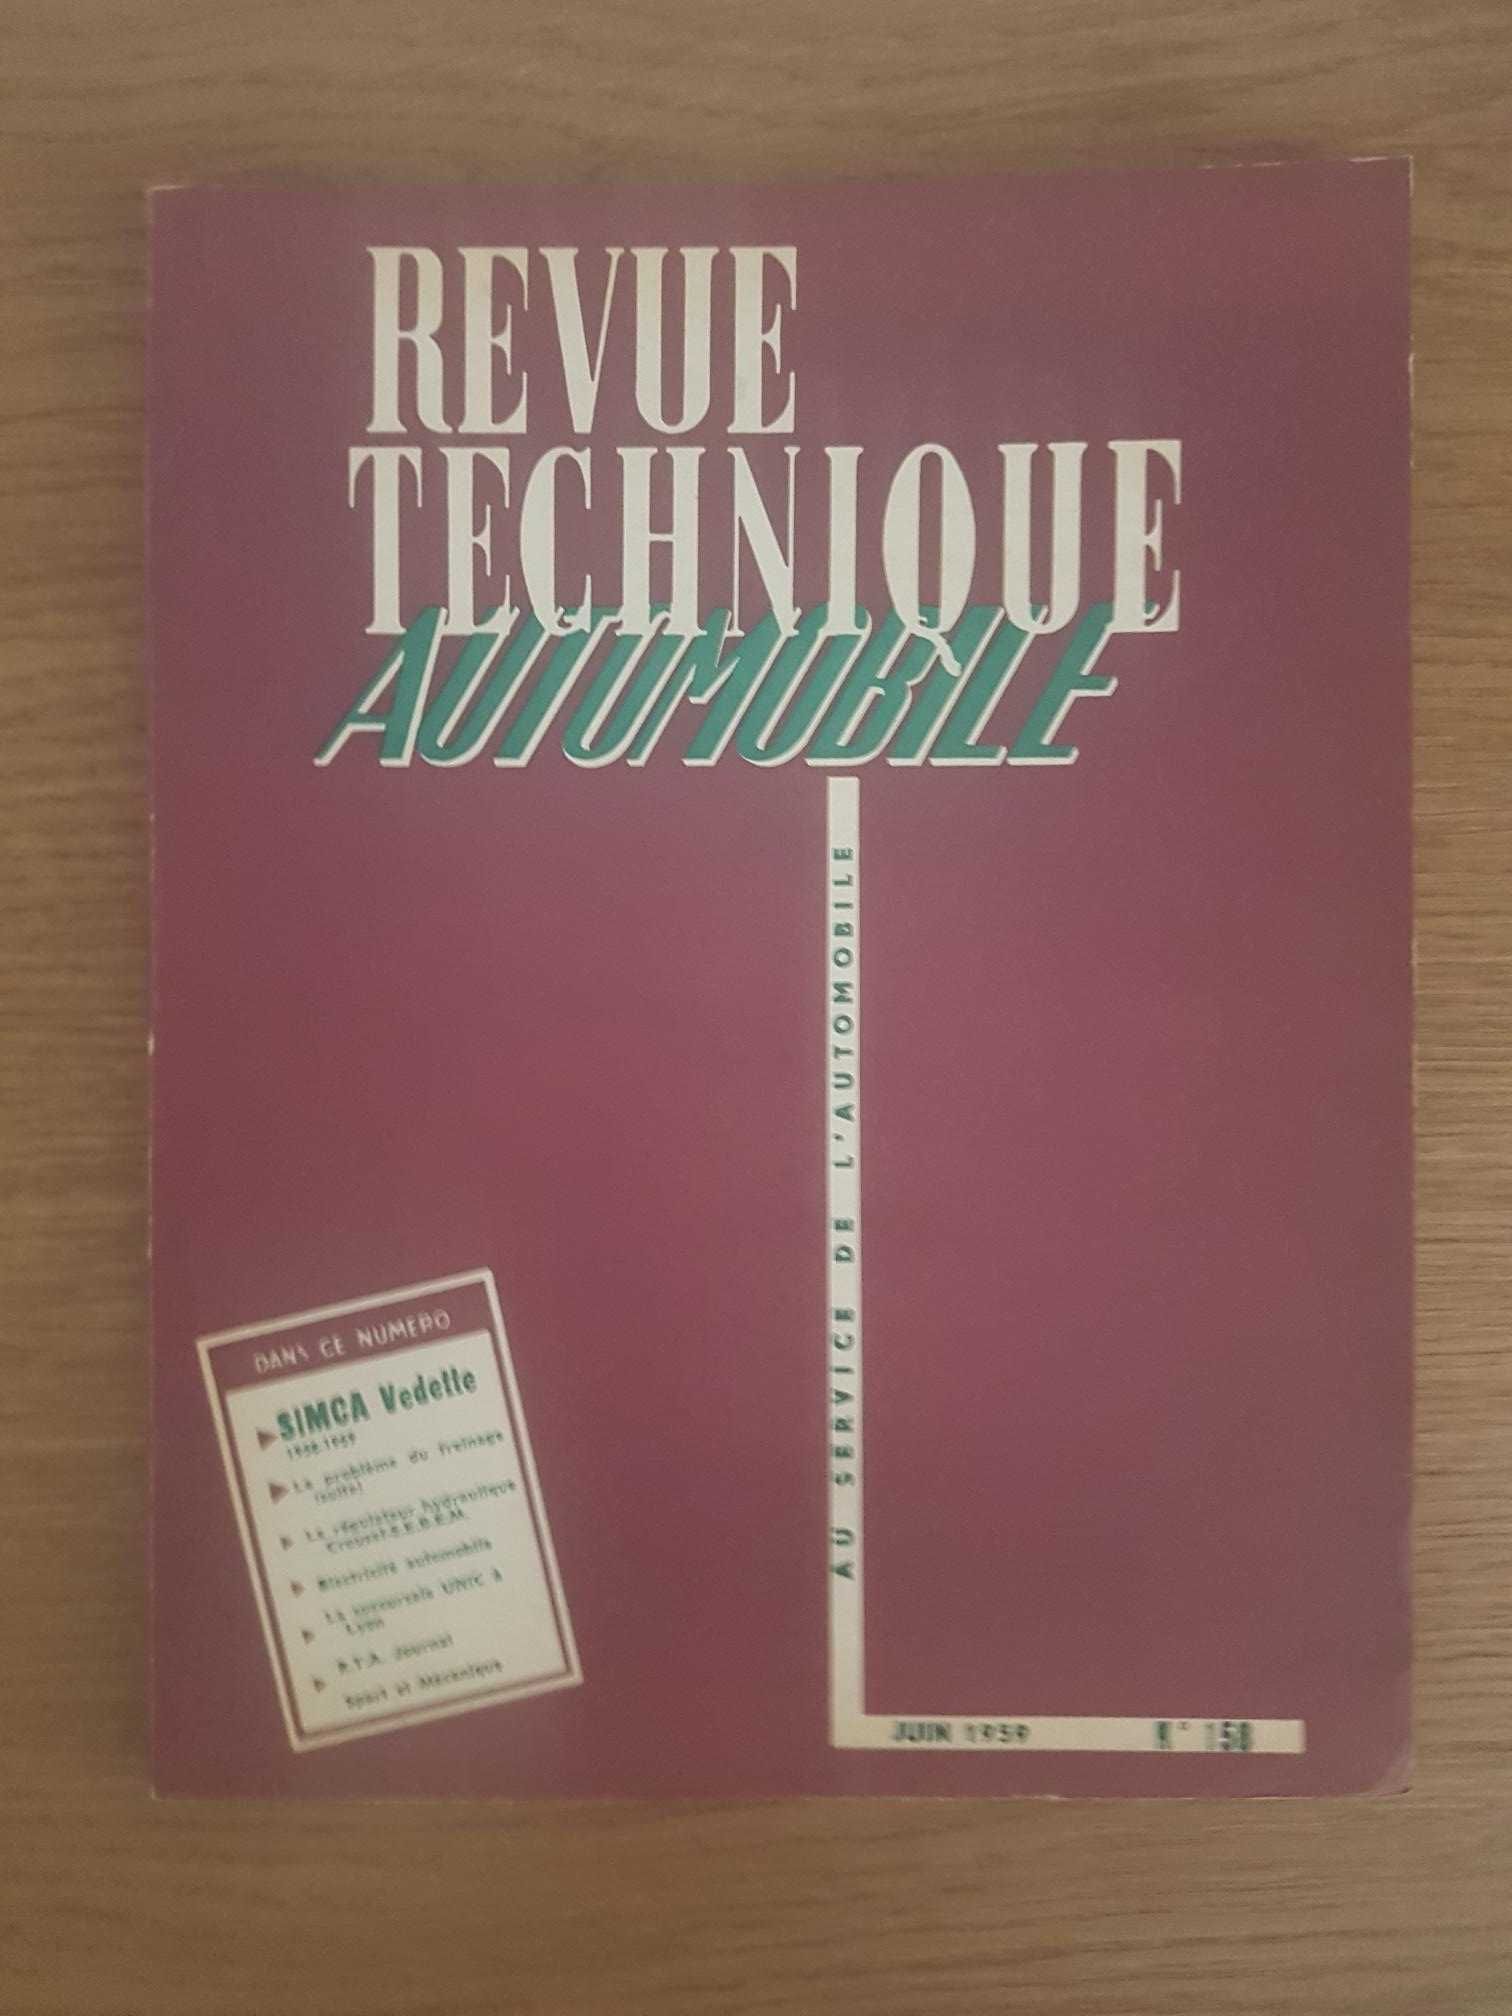 Revue Technique Automobile Nº158 (Ano:1959) Simca Vedette